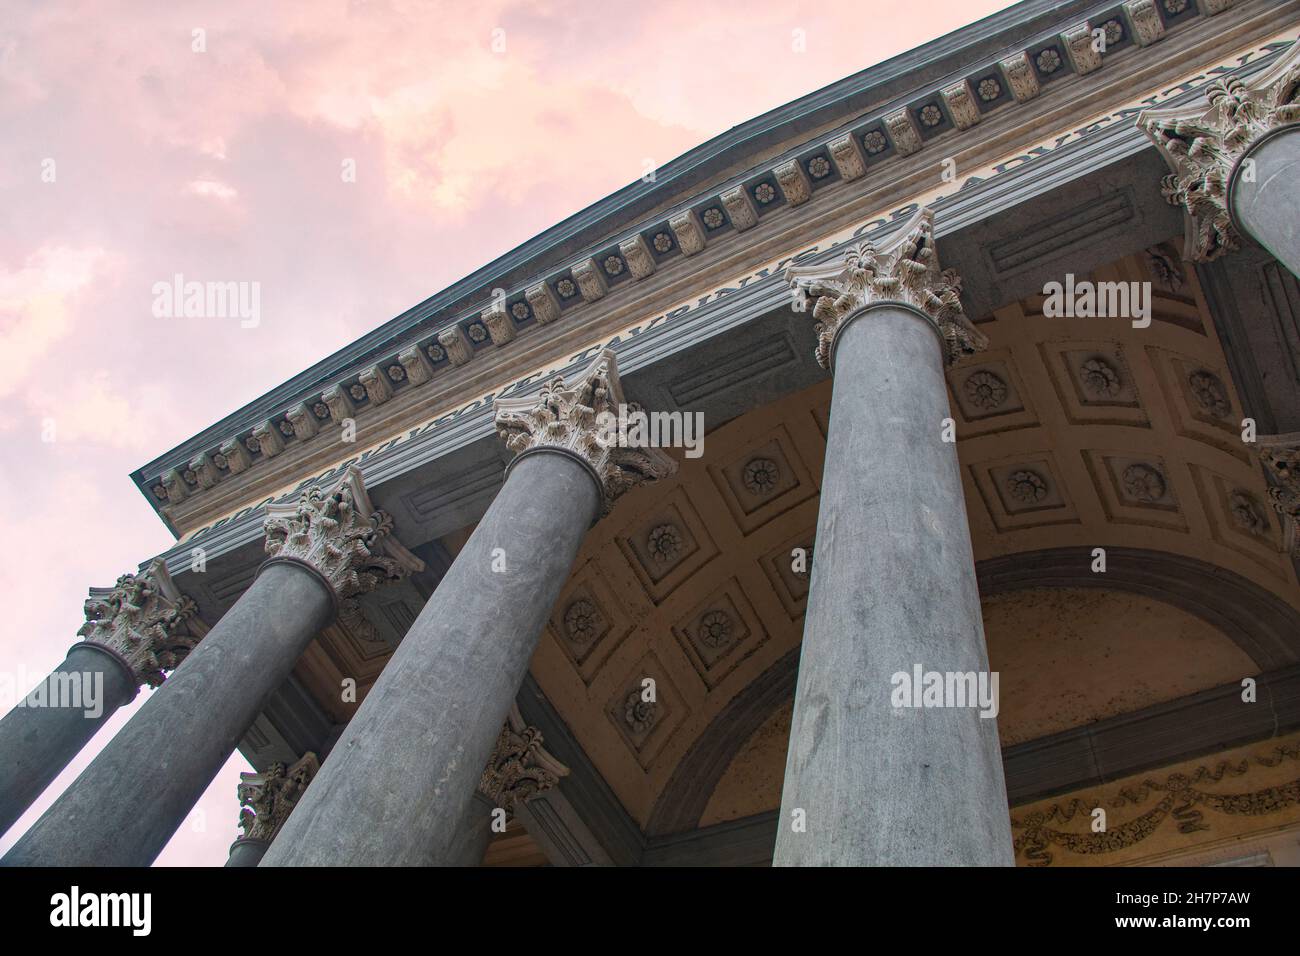 Der beeindruckende Säuleneingang zur Gran Madre di Dio, Turin (Turin), Piemonte, Italien - eine wunderschöne neoklassizistische Kirche am Fluss Po Stockfoto